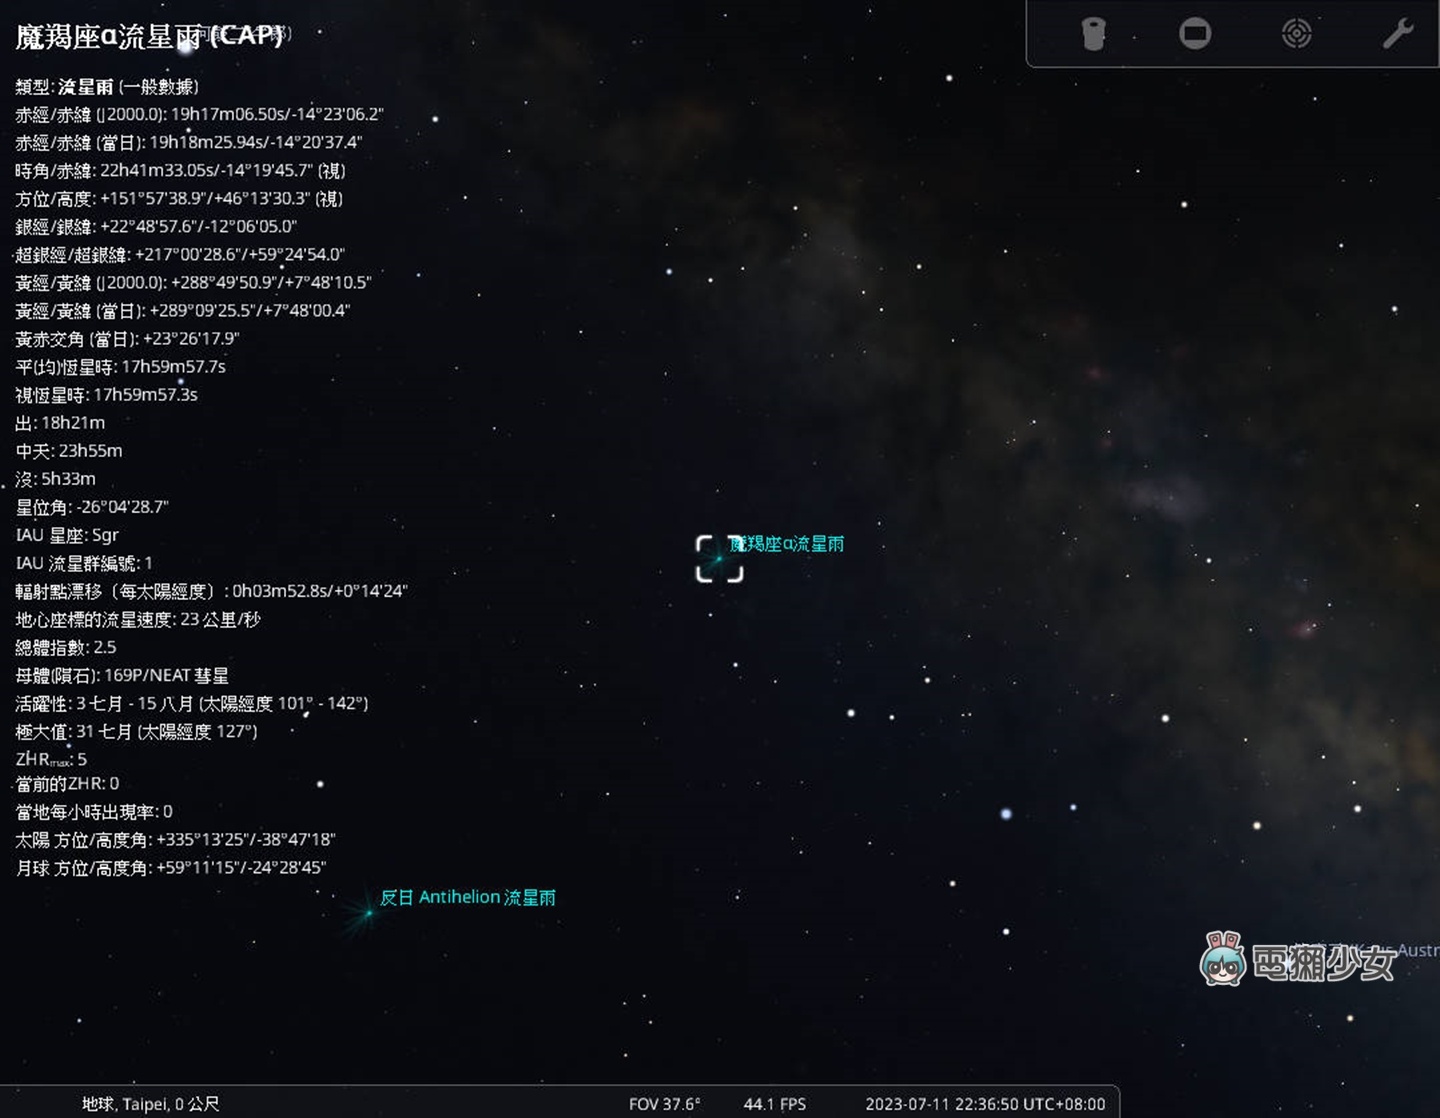 賞星用免費星象儀網站 stellarium，你知道有顆星星叫 Taiwan 嗎